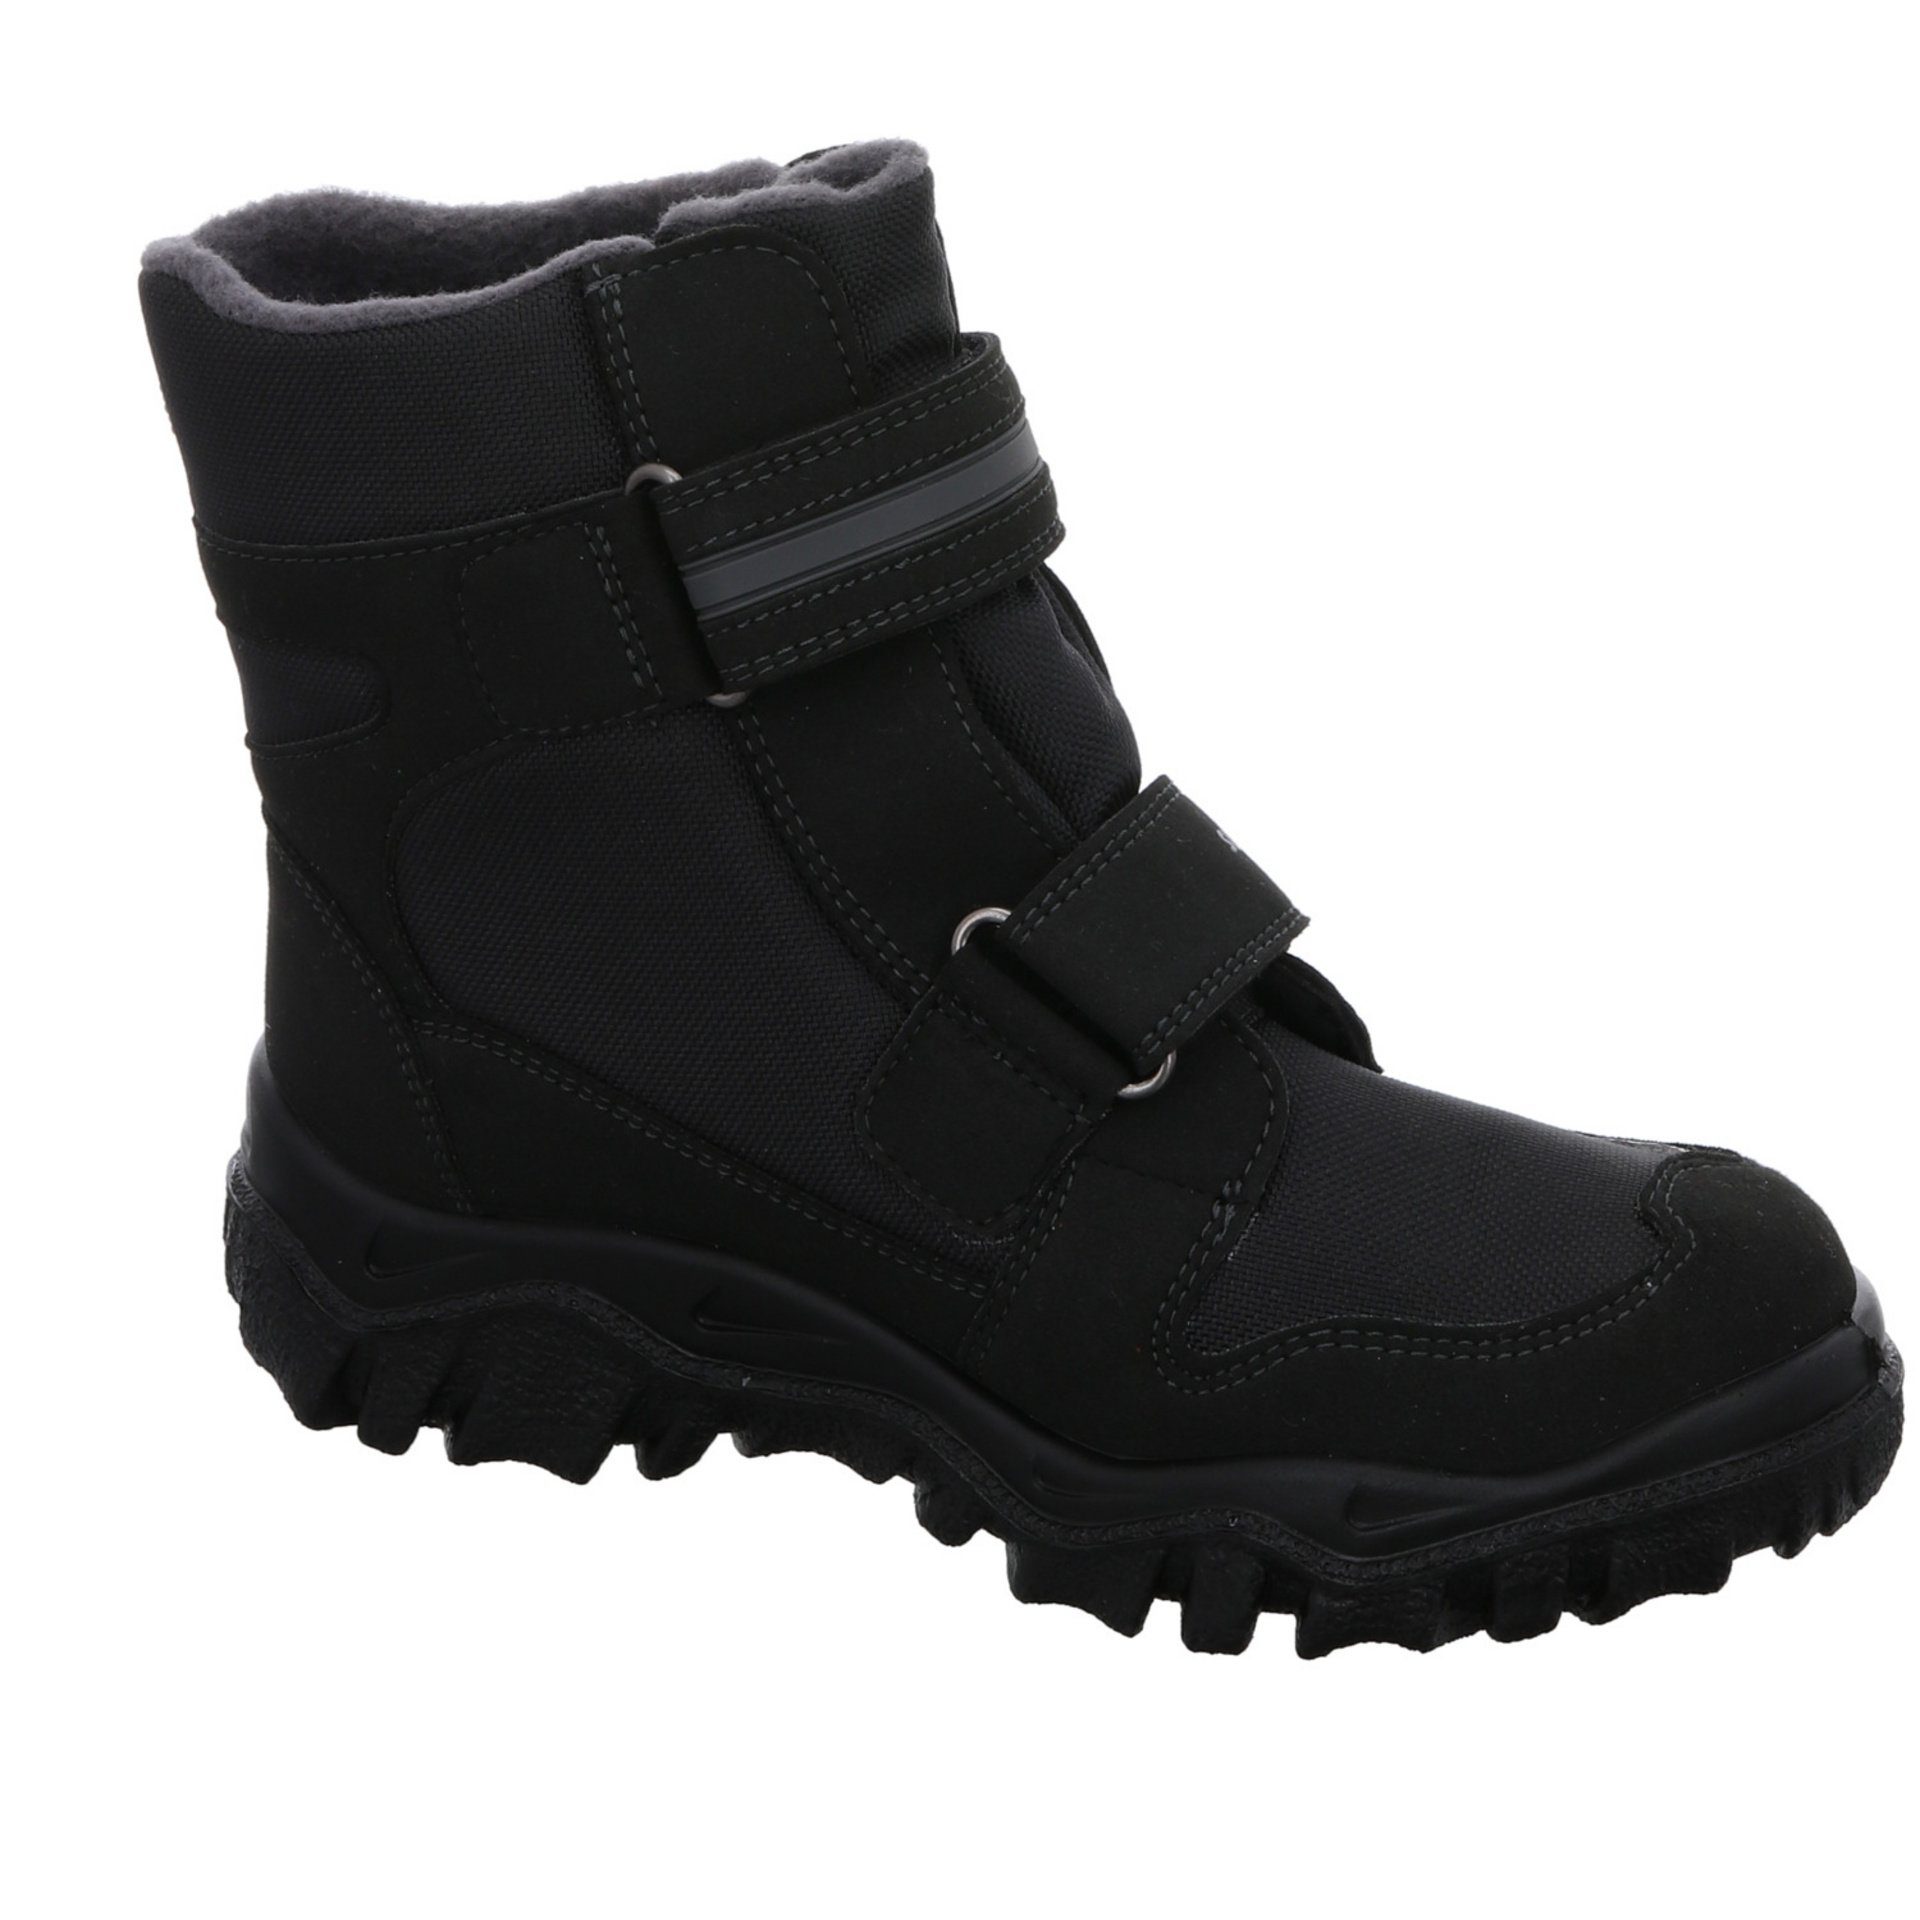 Stiefel Gore-Tex schwarz Superfit Boots grau Stiefel Schuhe Synthetikkombination 2 Jungen Husky